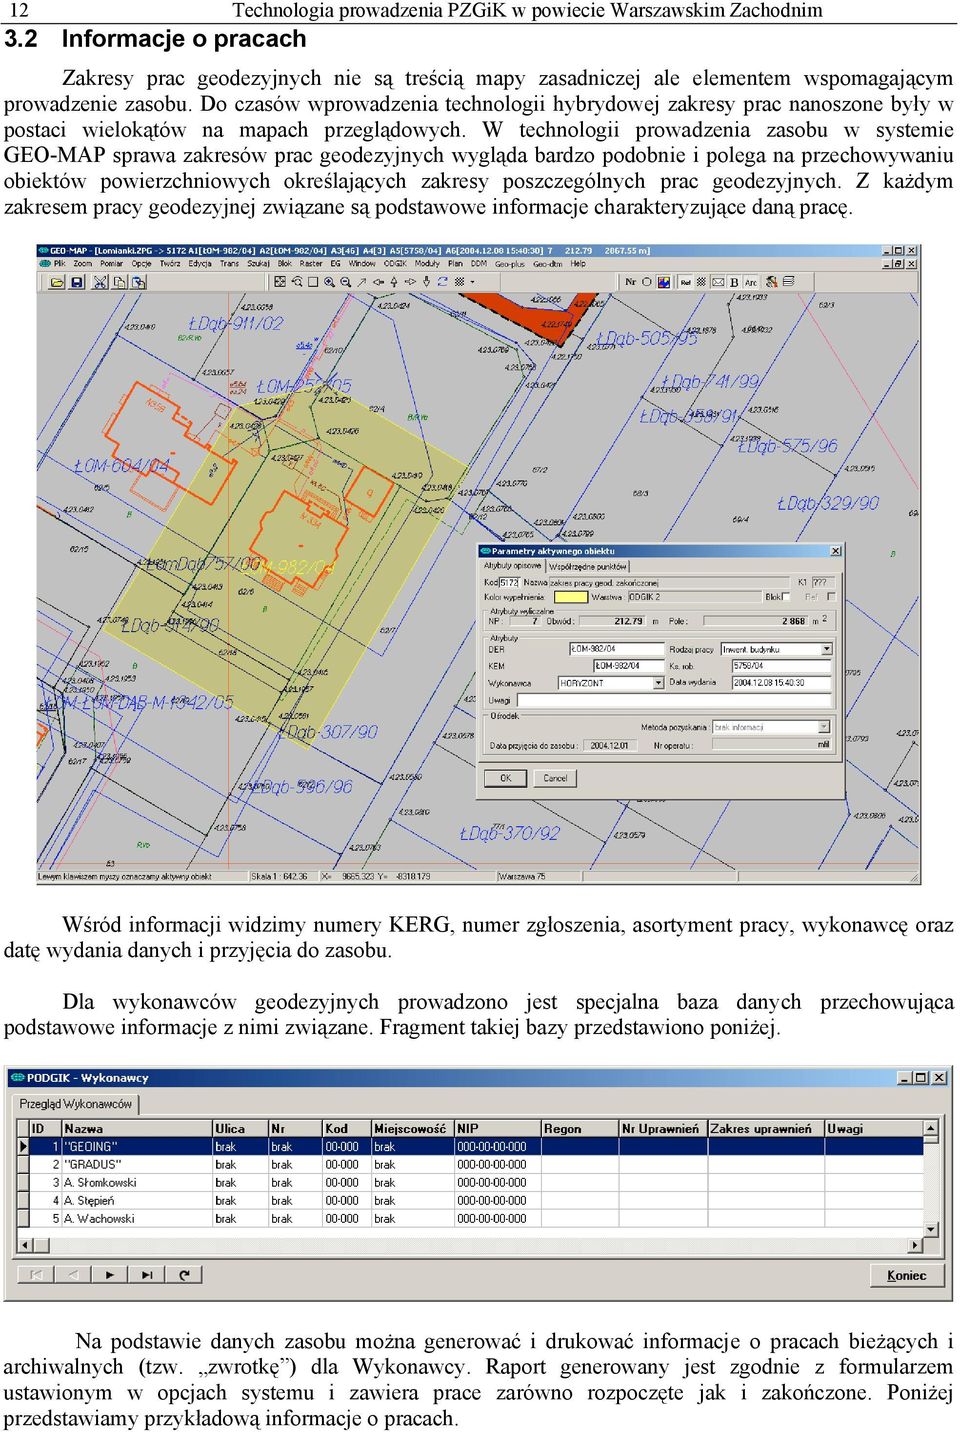 W technologii prowadzenia zasobu w systemie GEO-MAP sprawa zakresów prac geodezyjnych wygląda bardzo podobnie i polega na przechowywaniu obiektów powierzchniowych określających zakresy poszczególnych